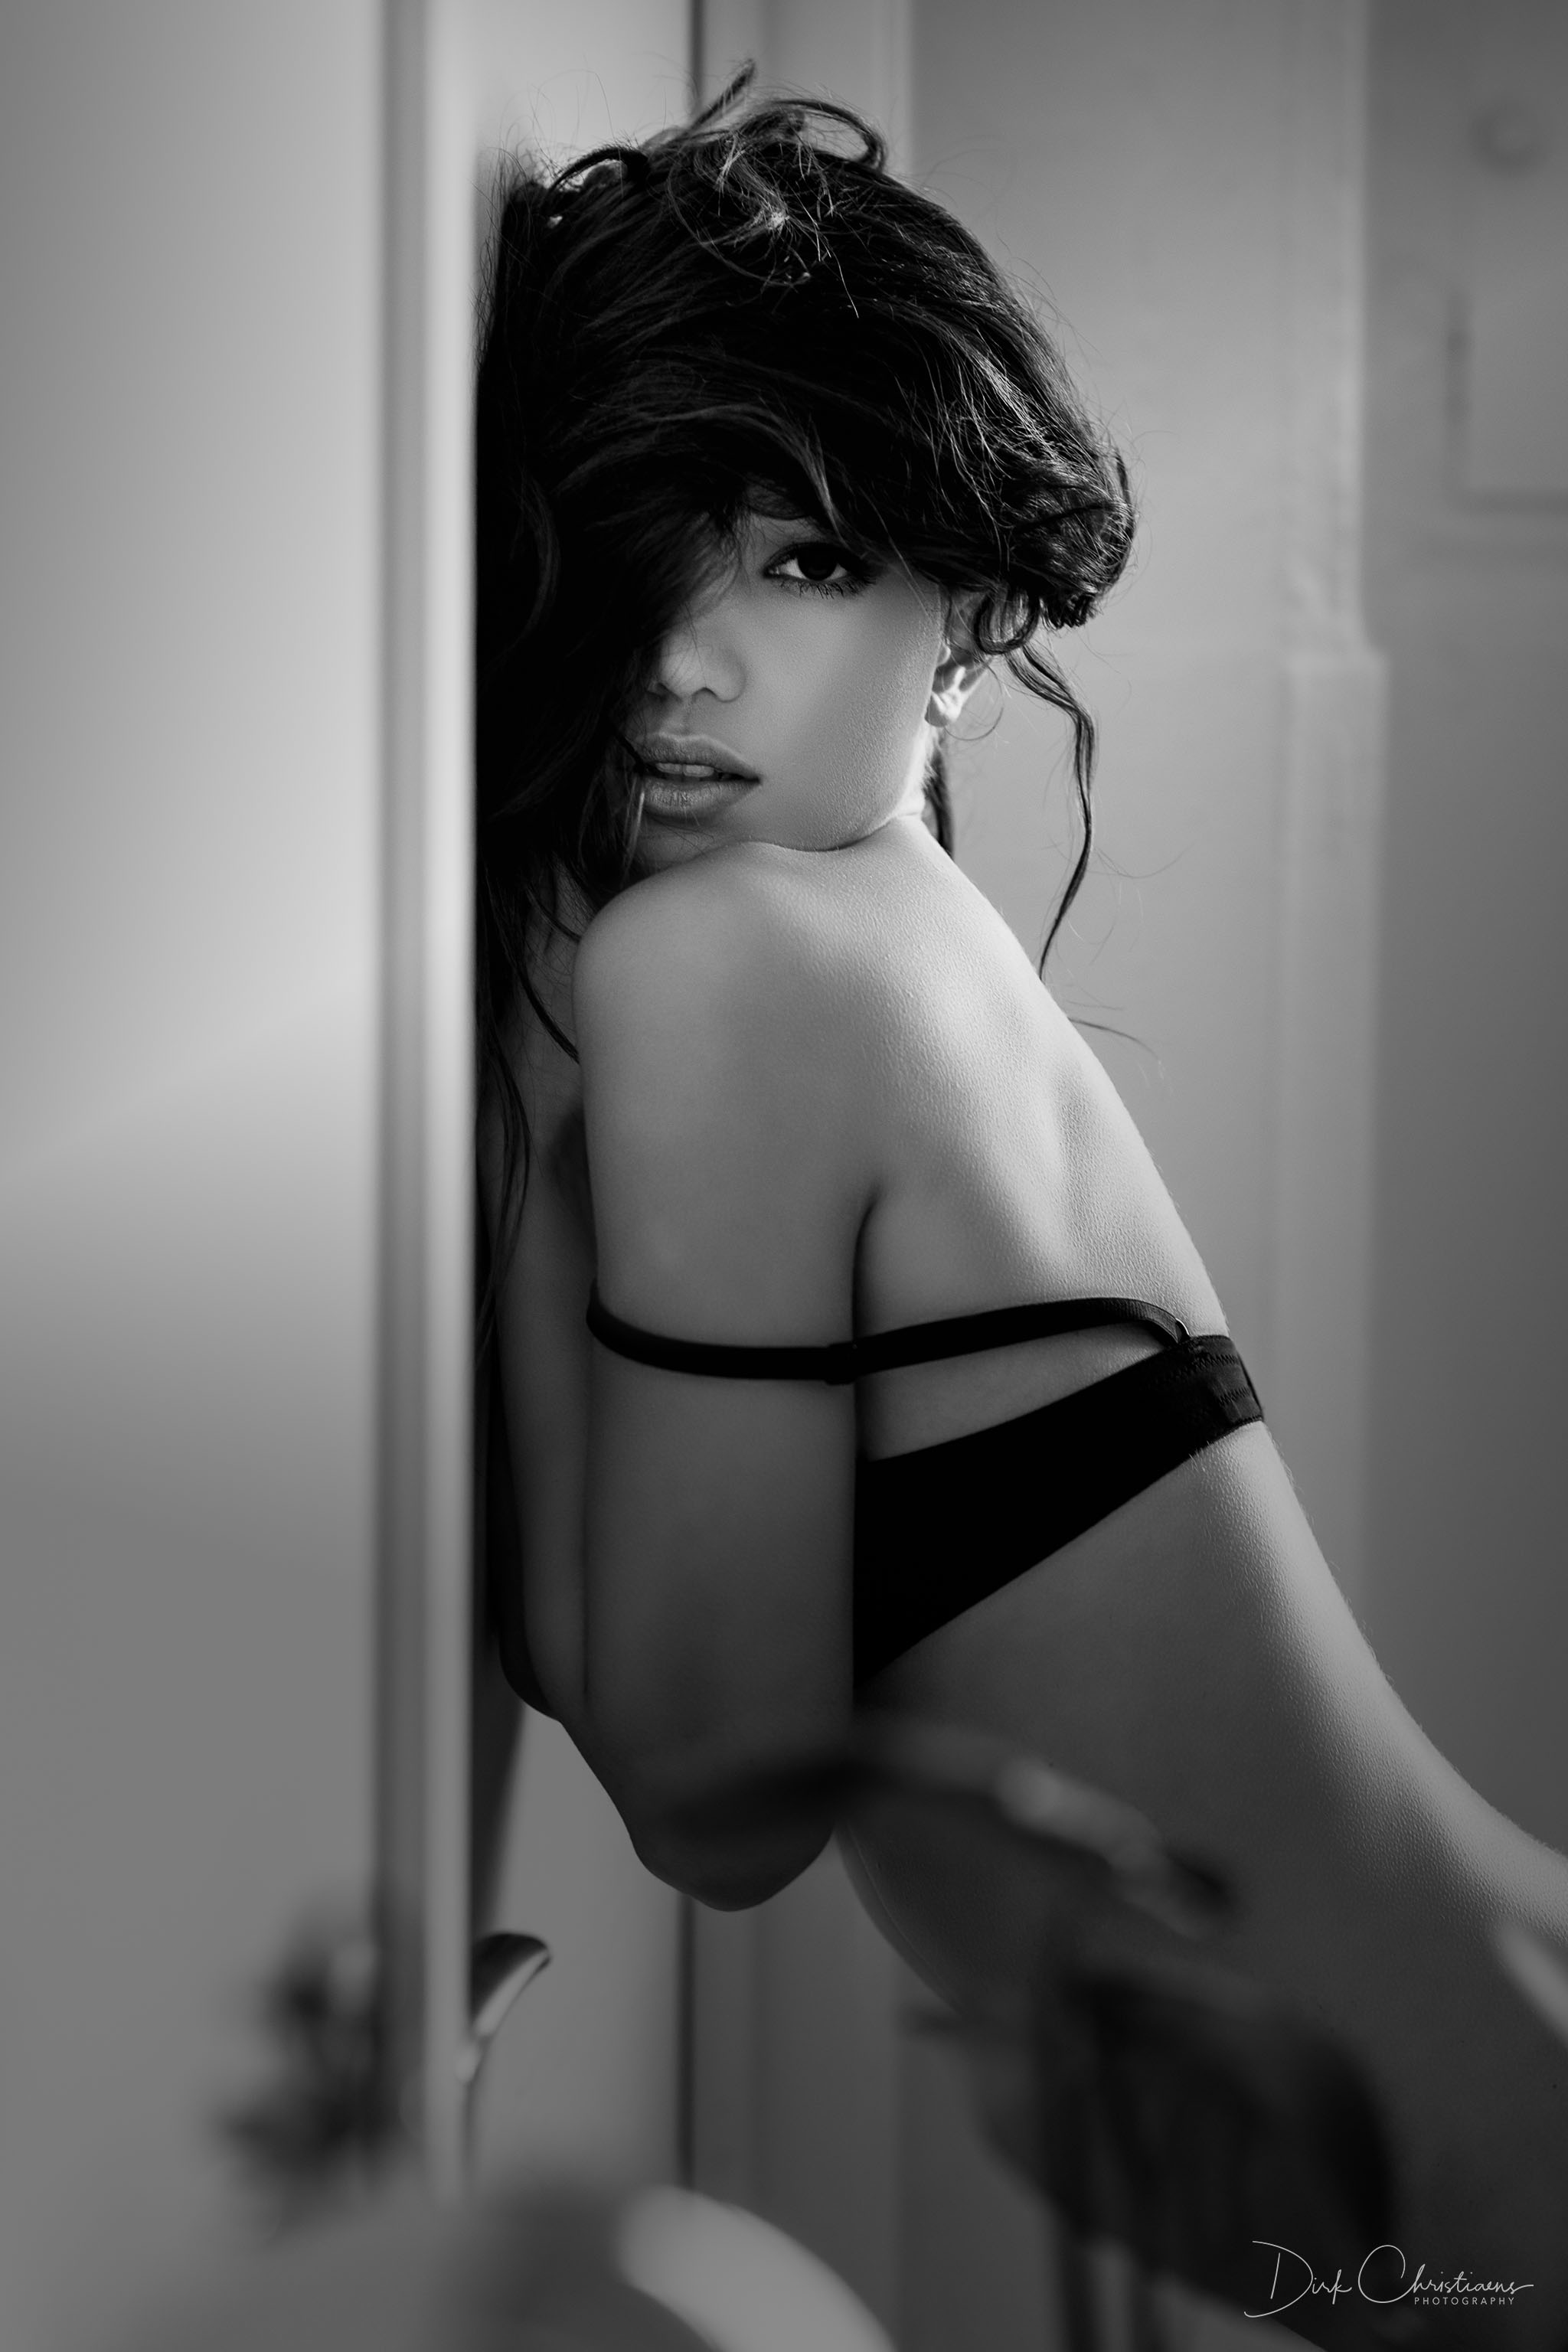 Kitrysha, model from Italy at a boudoir photoshoot